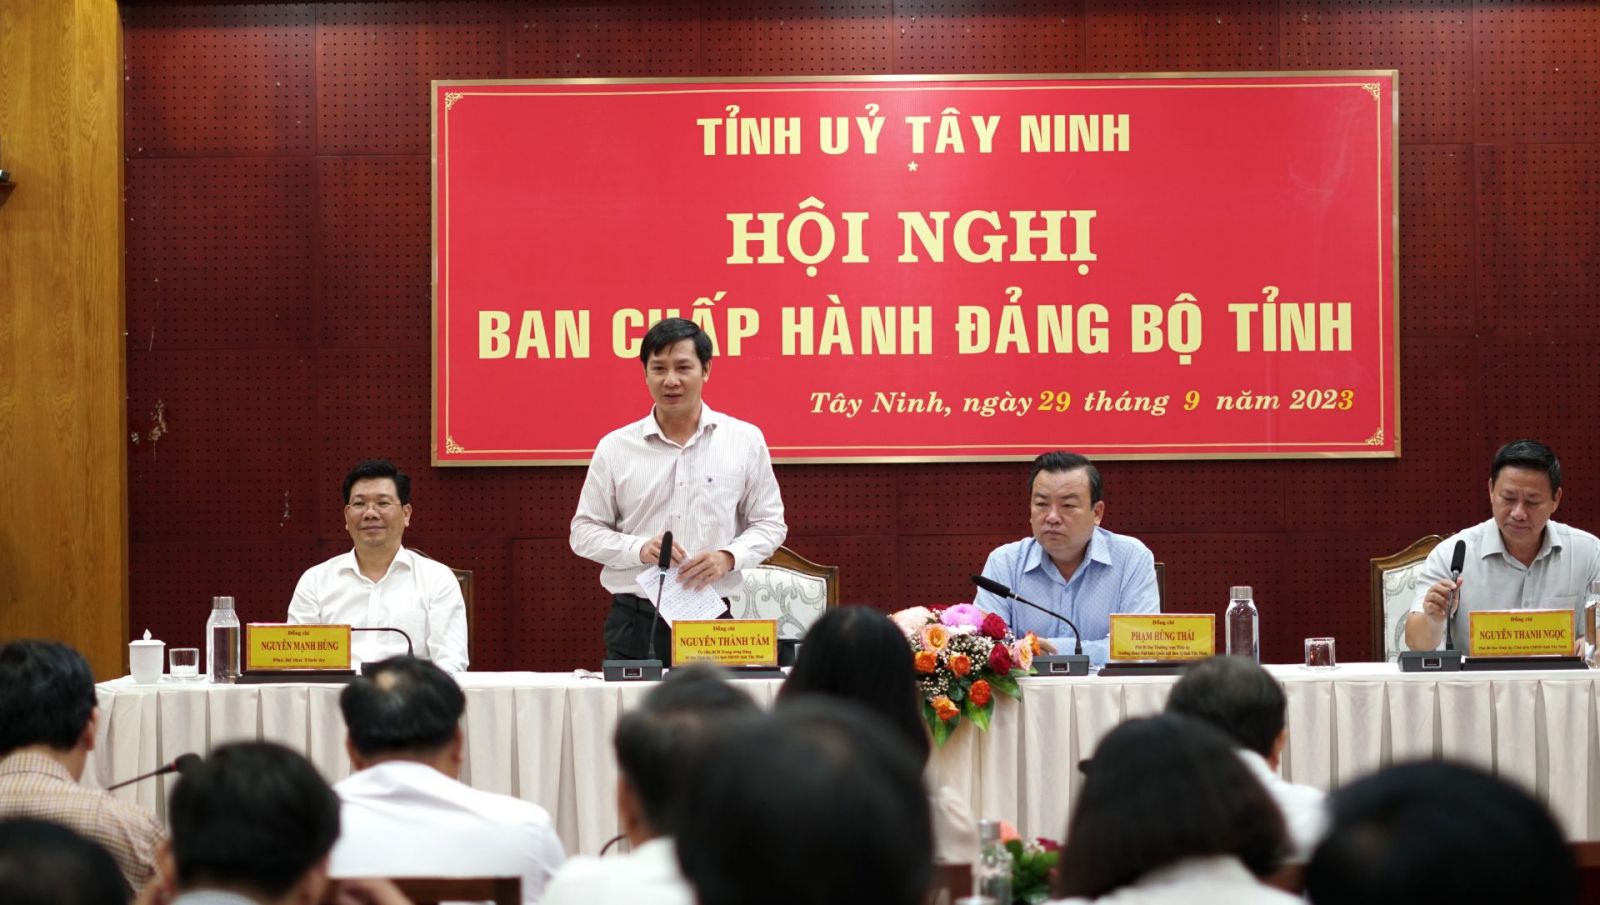 Bí thư Tỉnh uỷ, Chủ tịch HĐND tỉnh Nguyễn Thành Tâm kết luận hội nghị.